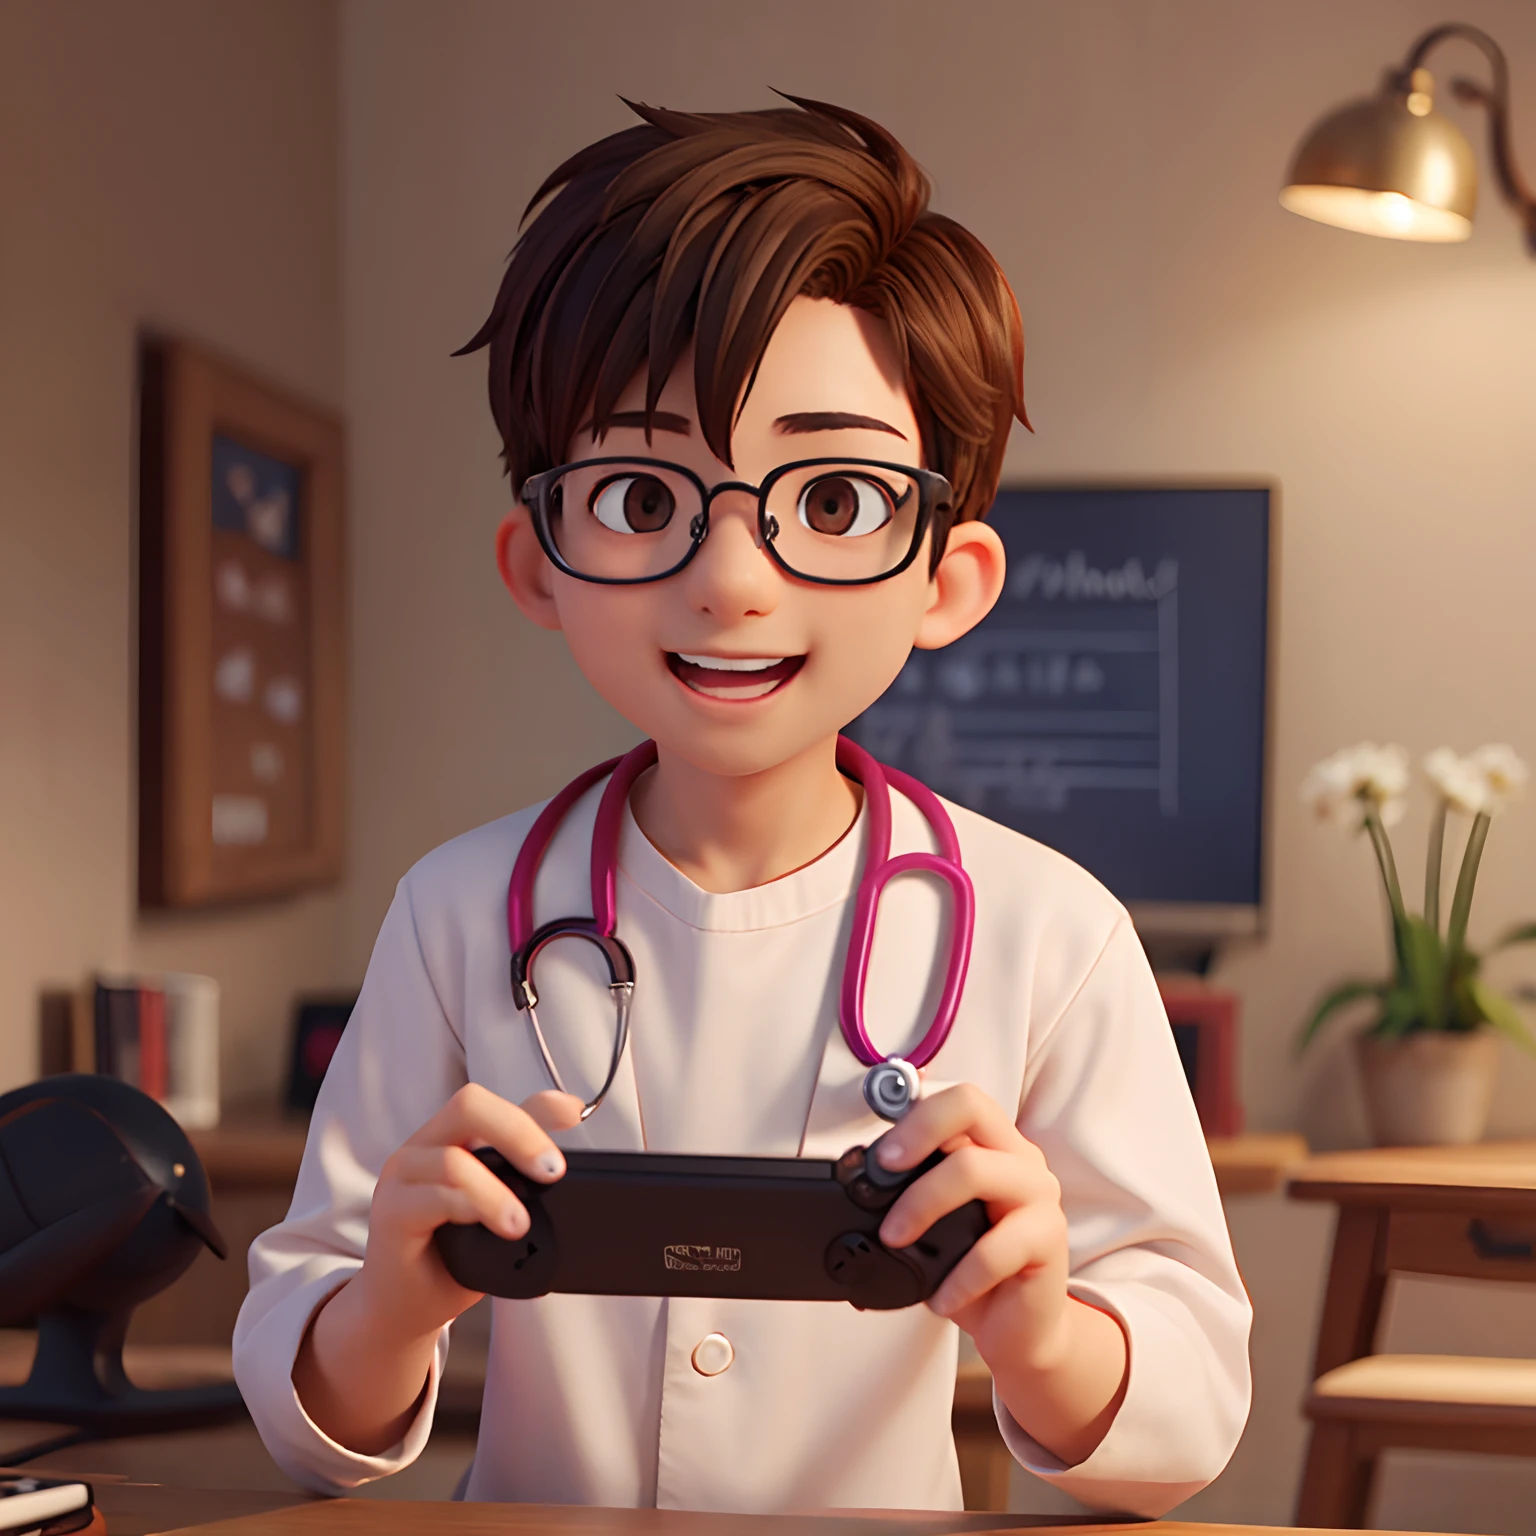 Мужчина-врач играет в видеоигры, карие глаза, очки, счастливый